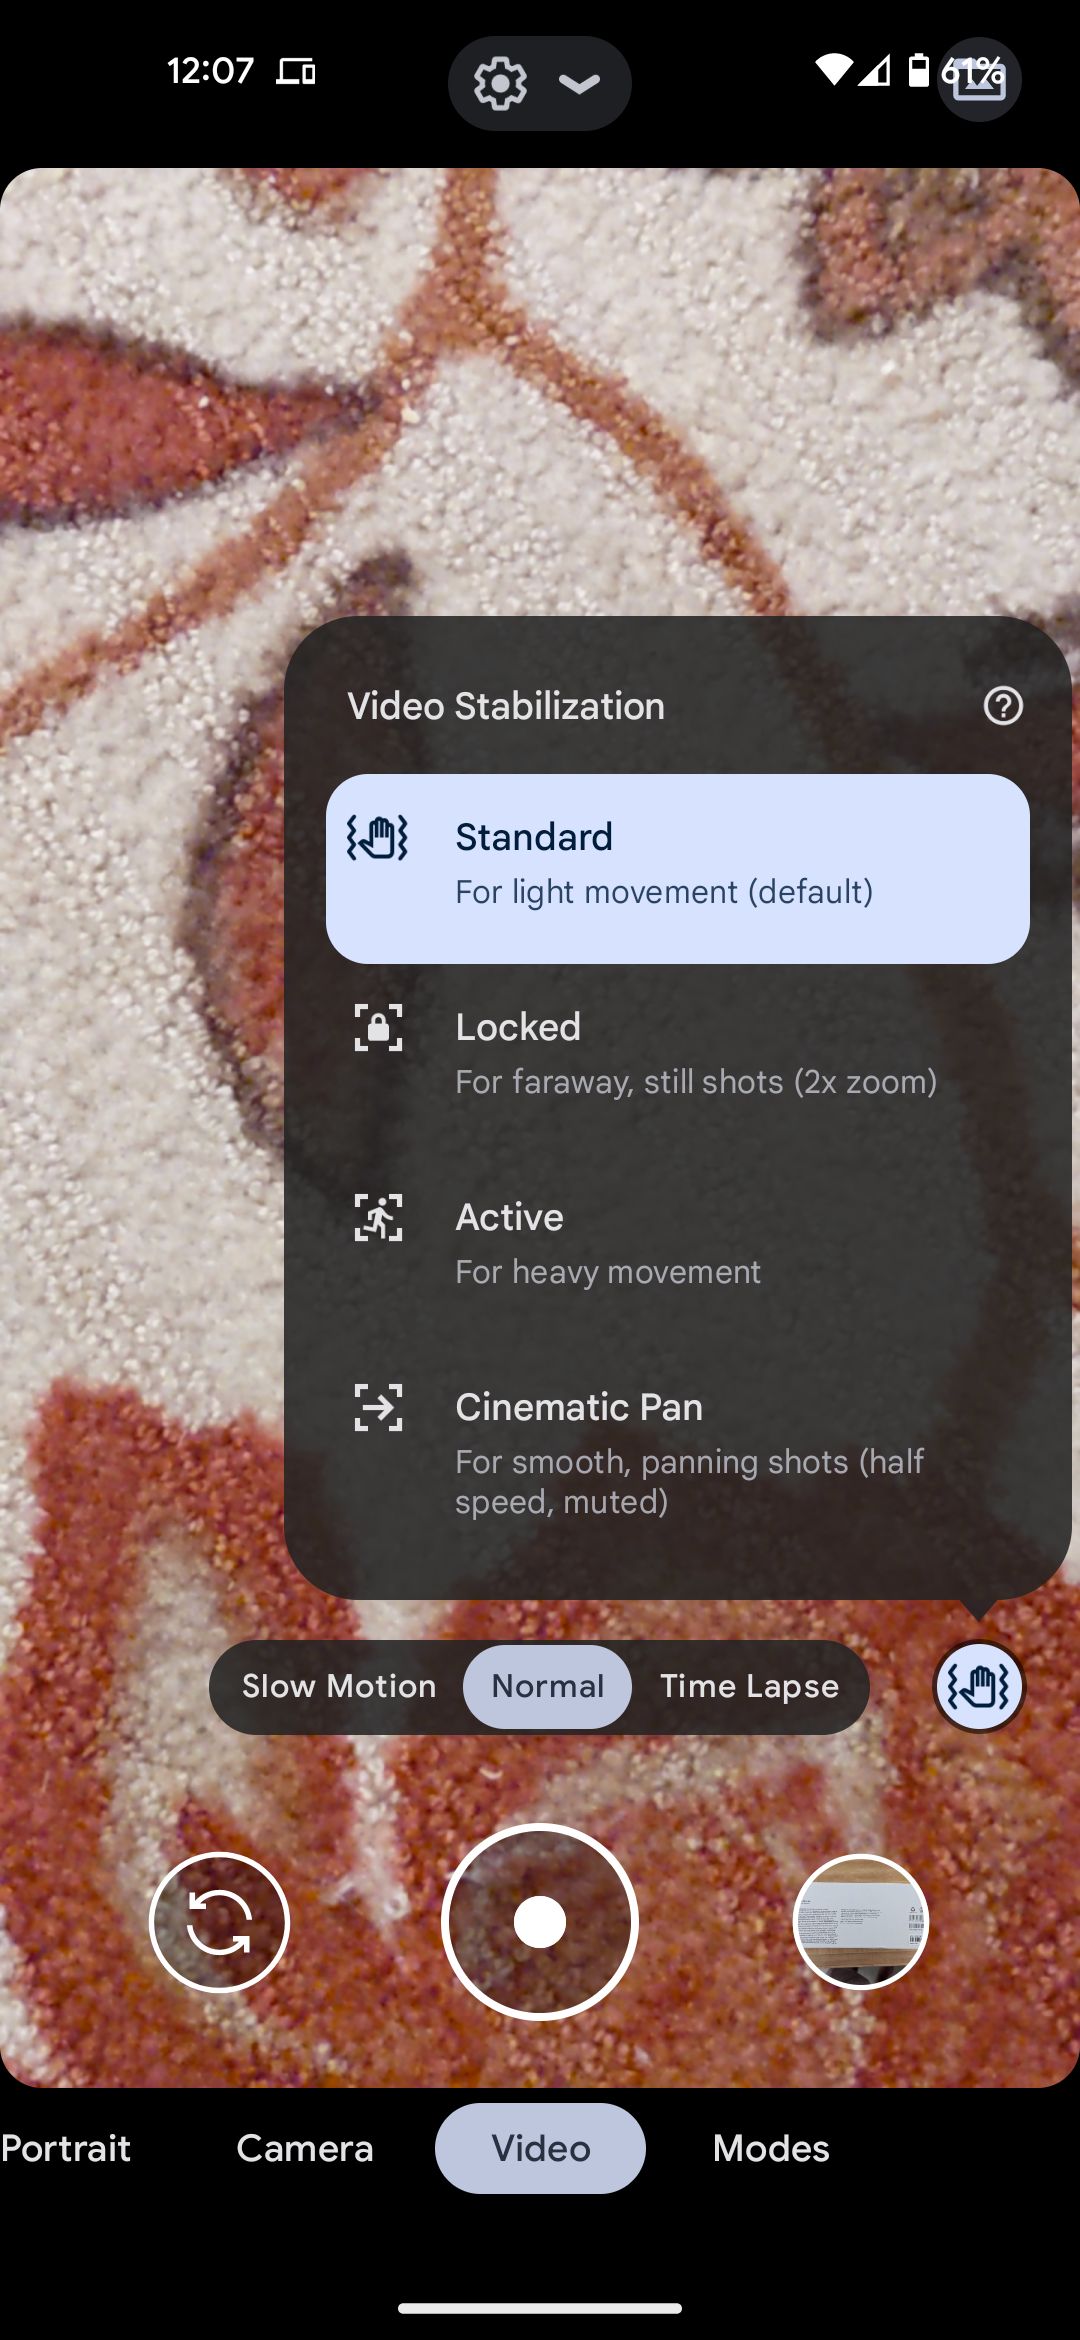 The Google camera app's video mode stabilization settings menu.